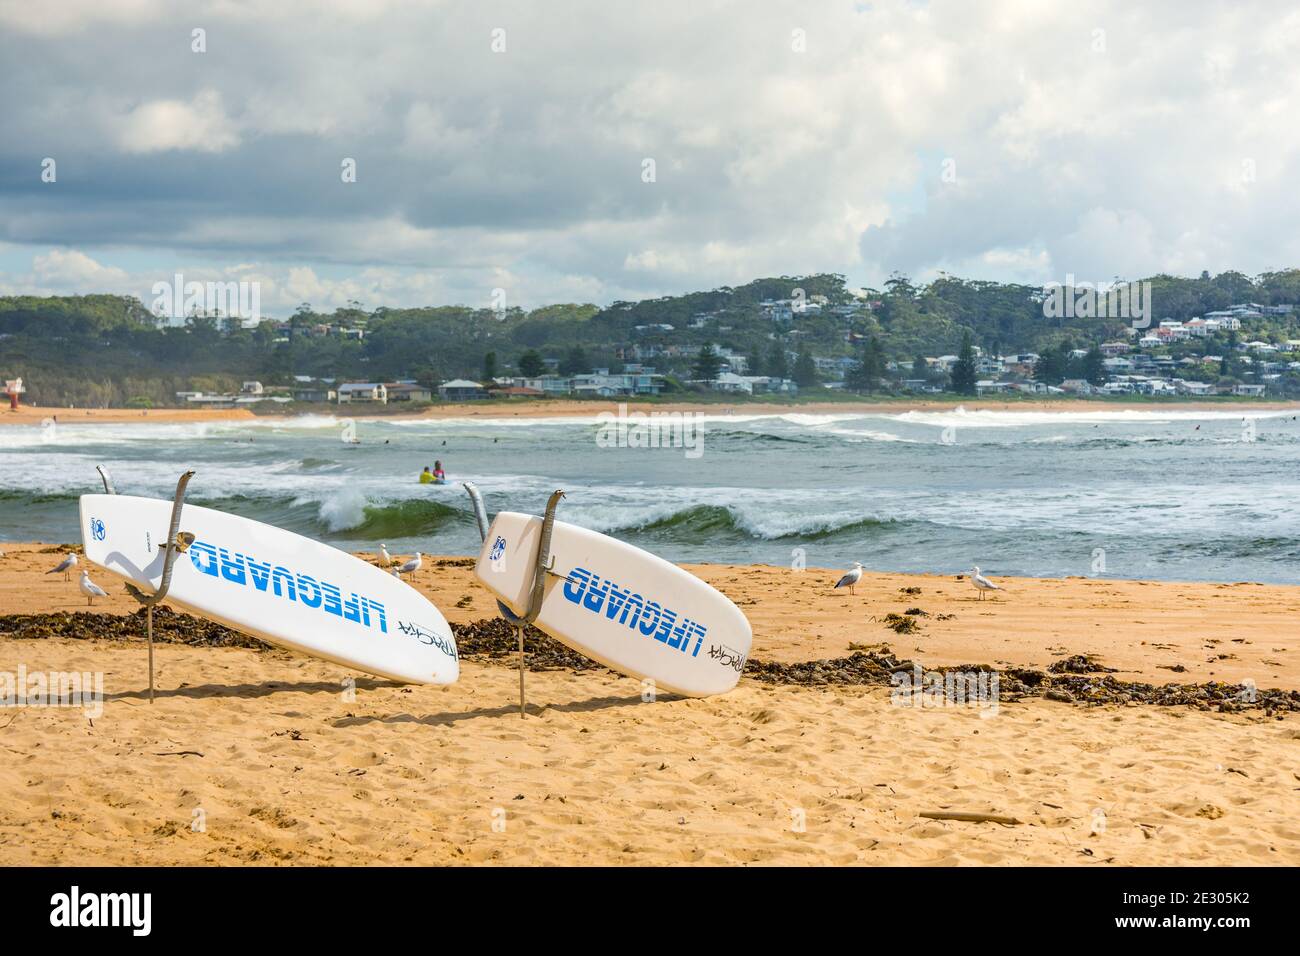 20 février 2020 - Avoca Beach NSW, Australie : planches de sauvetage sur la plage avec l'extrémité nord de la plage en arrière-plan. Banque D'Images